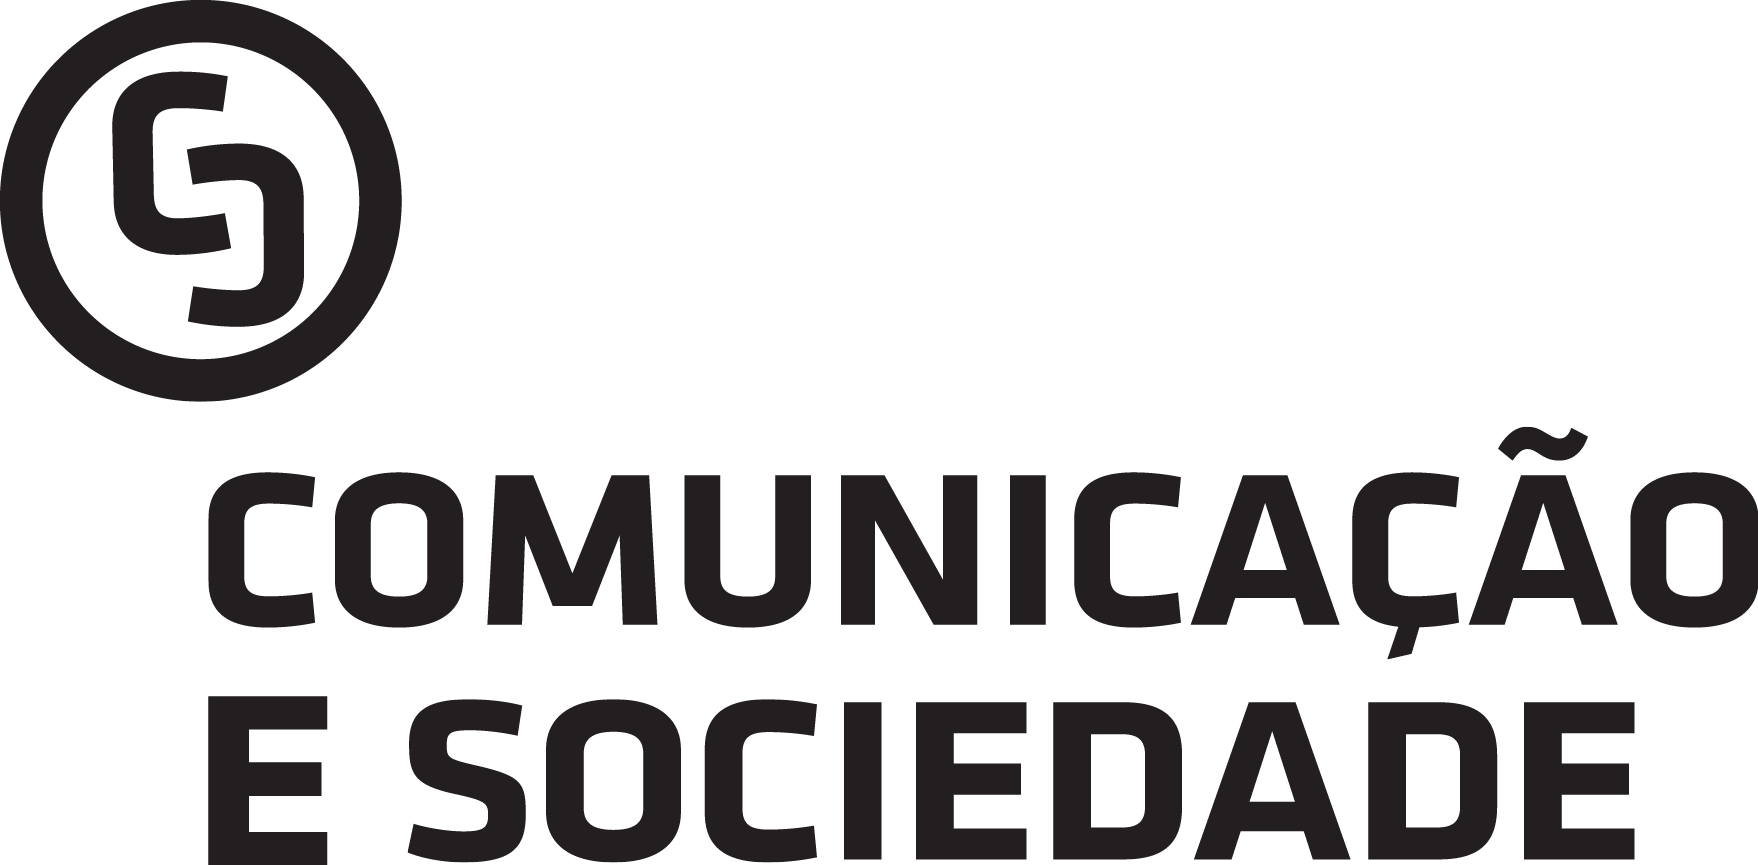 Comunicação e Sociedade